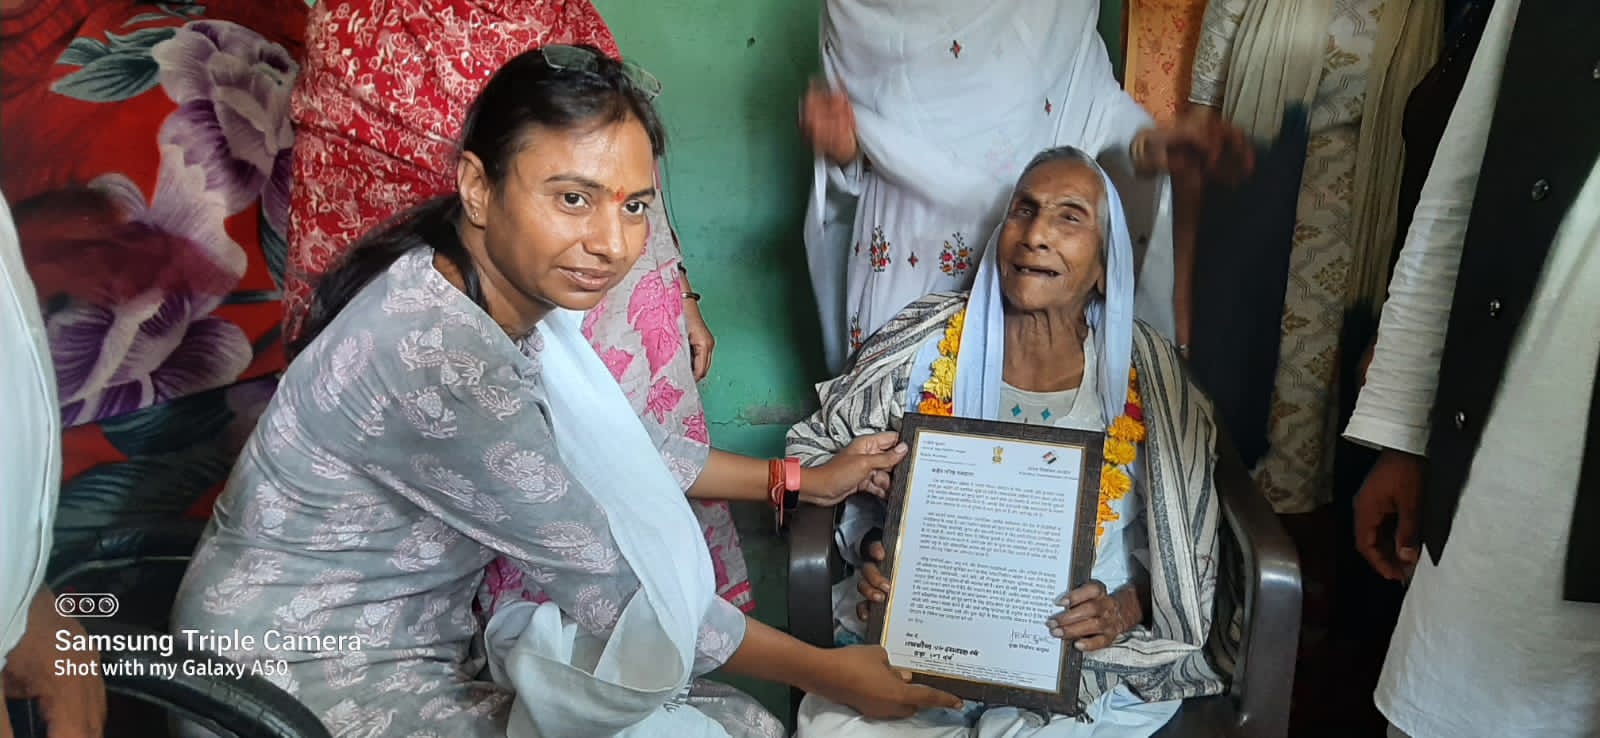 अंतर्राष्ट्रीय वृद्धजन दिवस पर वृद्ध महिला तस्लीमन (107 वर्ष) को एसडीएम भारती भरद्वाज द्वारा किया गया सम्मानित | New India Times